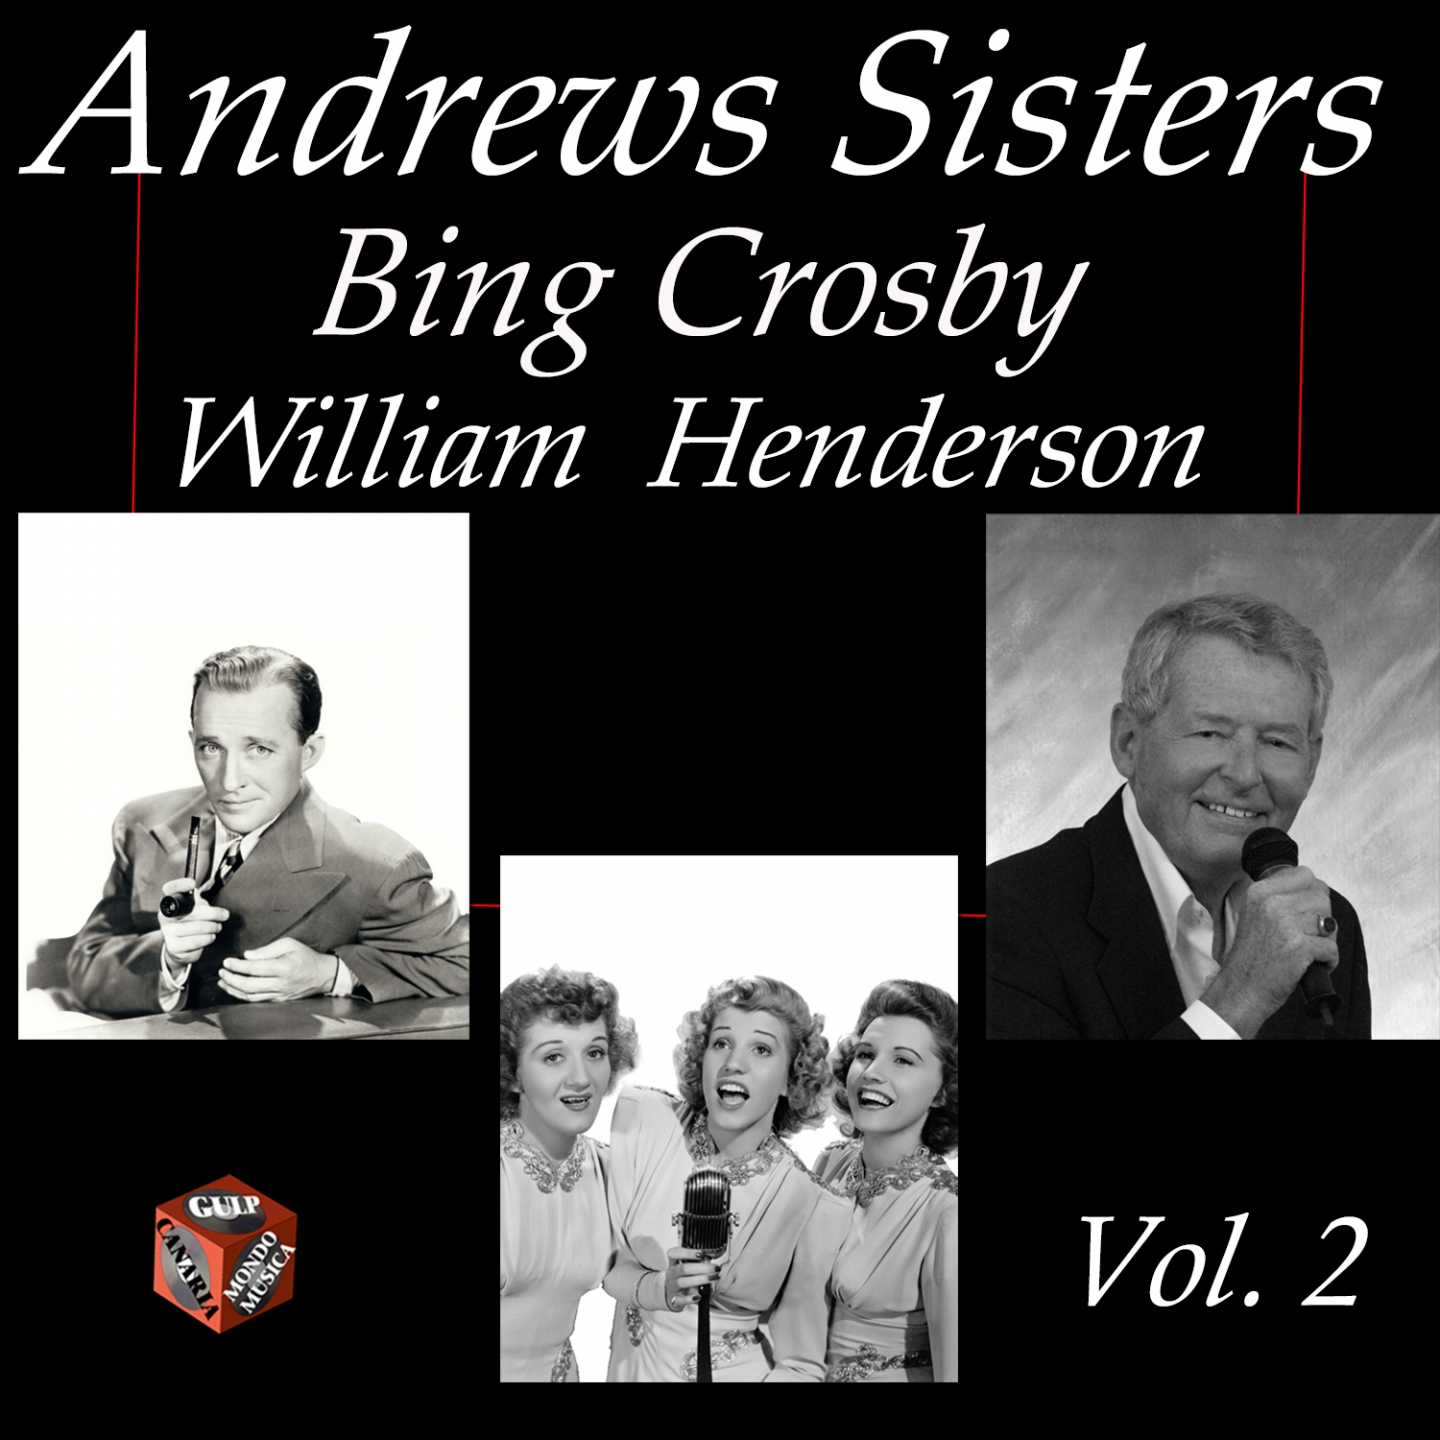 Andrews Sisters, Bing Crosby, William Henderson, Vol. 2